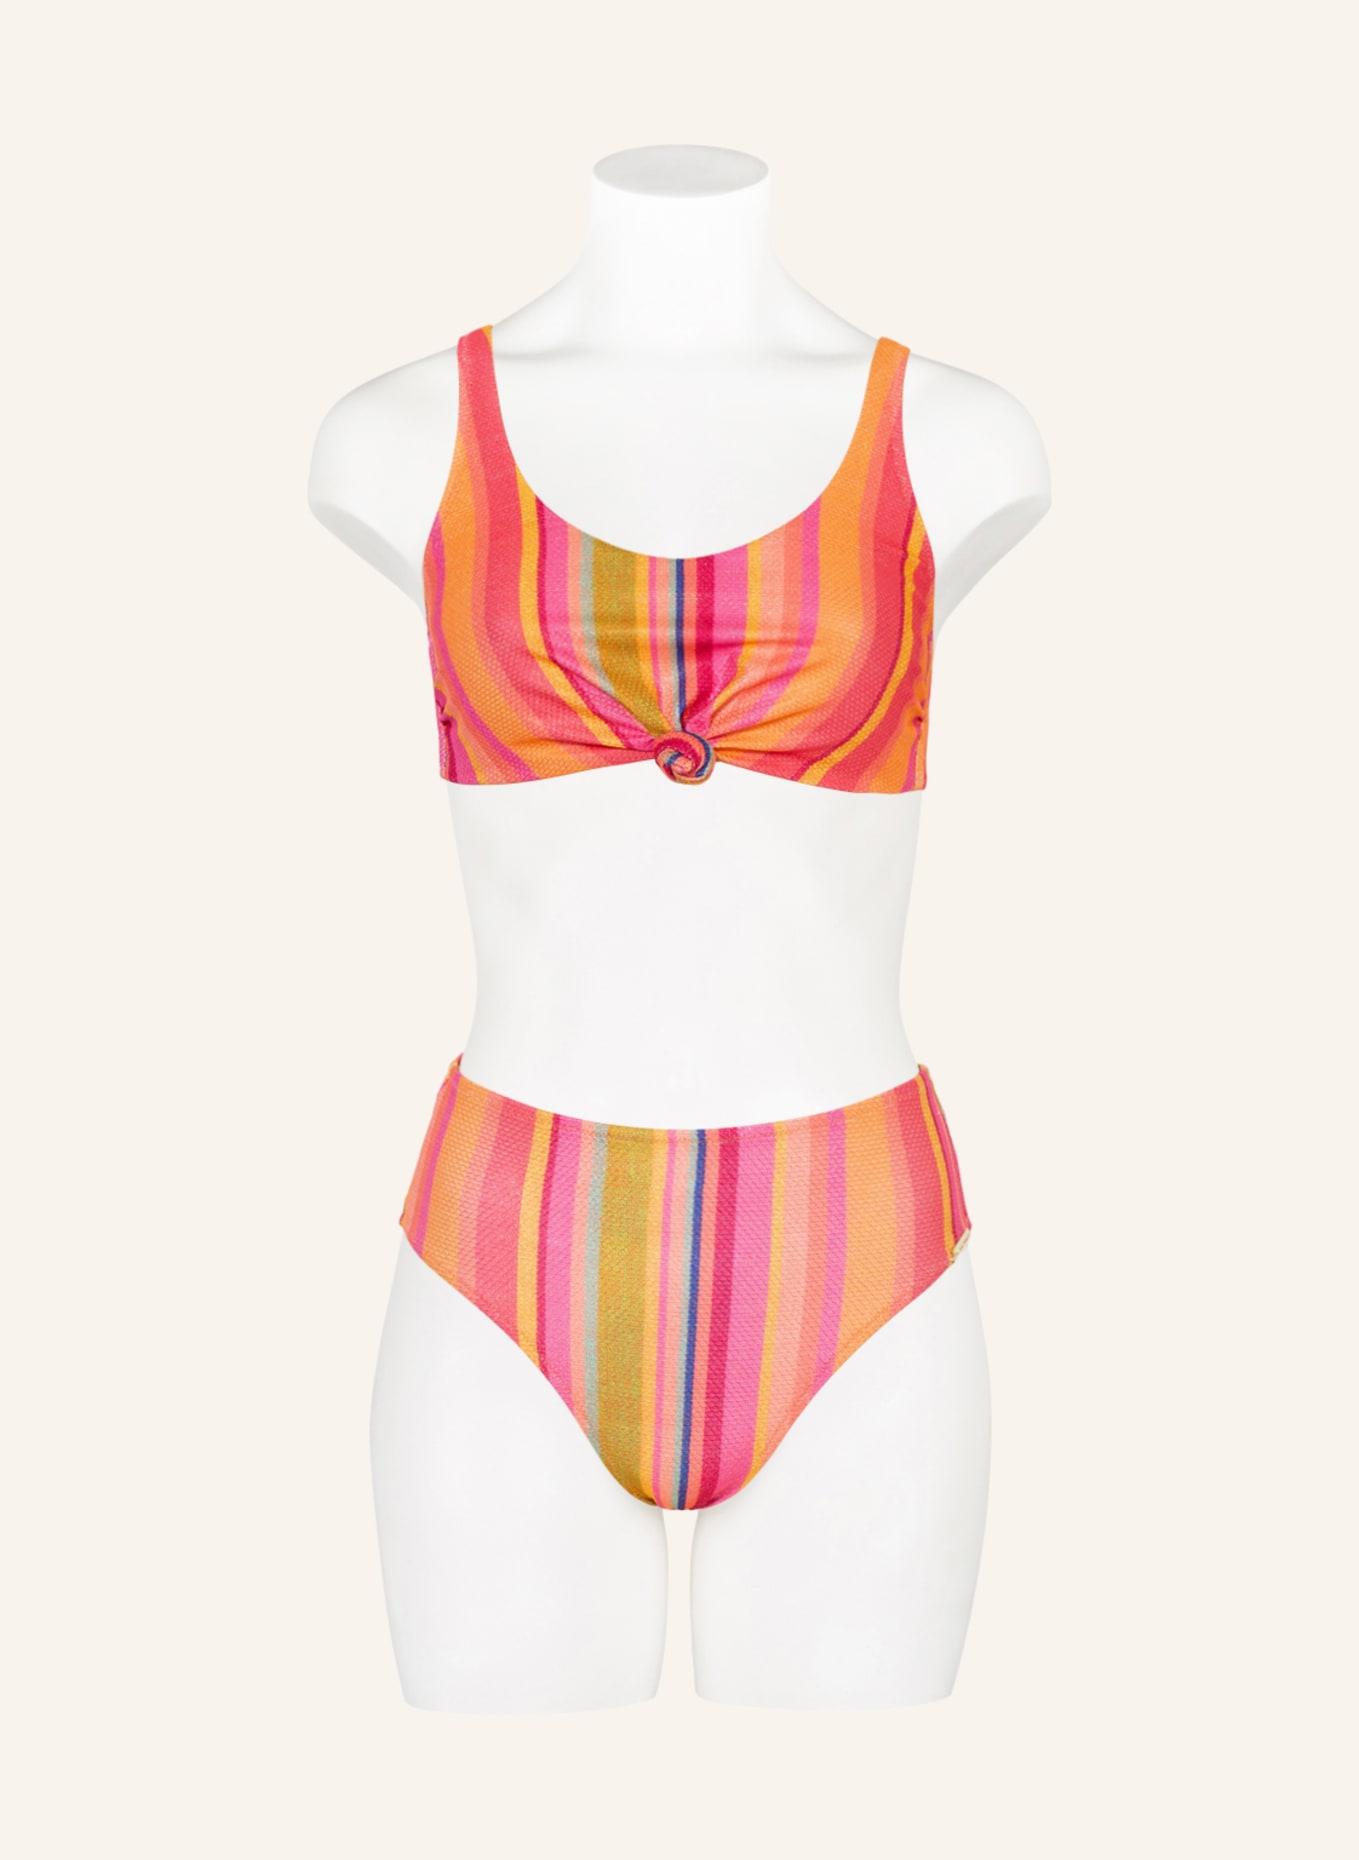 watercult Bustier-Bikini-Top in hellrot/ DOPAMINE pink STRIPE orange